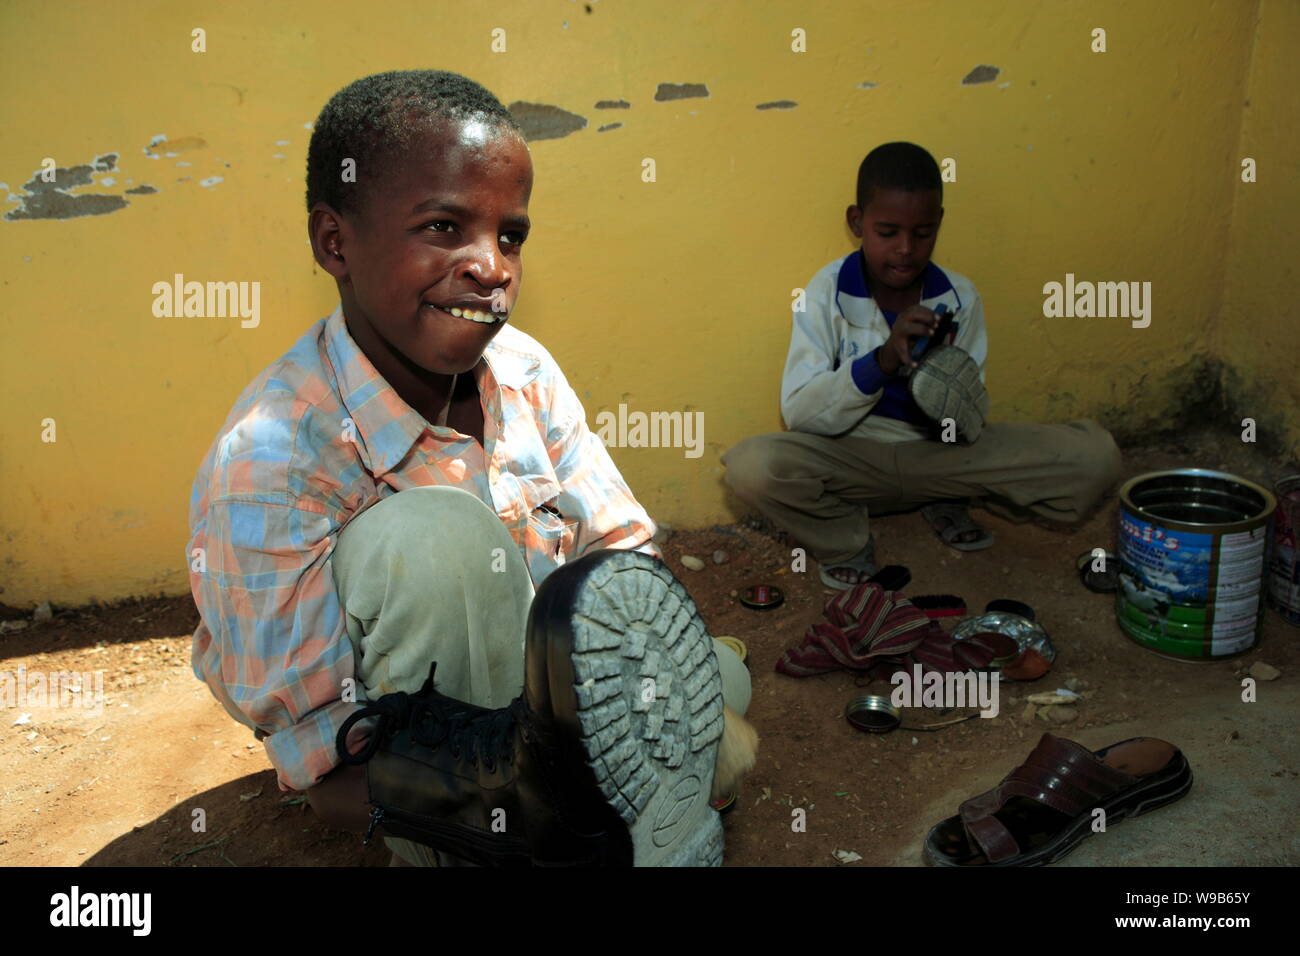 Die somalische Kinder polnischen Schuhe in Garowe, Puntland, Somalia, 18. Januar 2009. Zwei junge chinesische Journalisten wurden im Januar 2009 nach Somalia geschickt Stockfoto